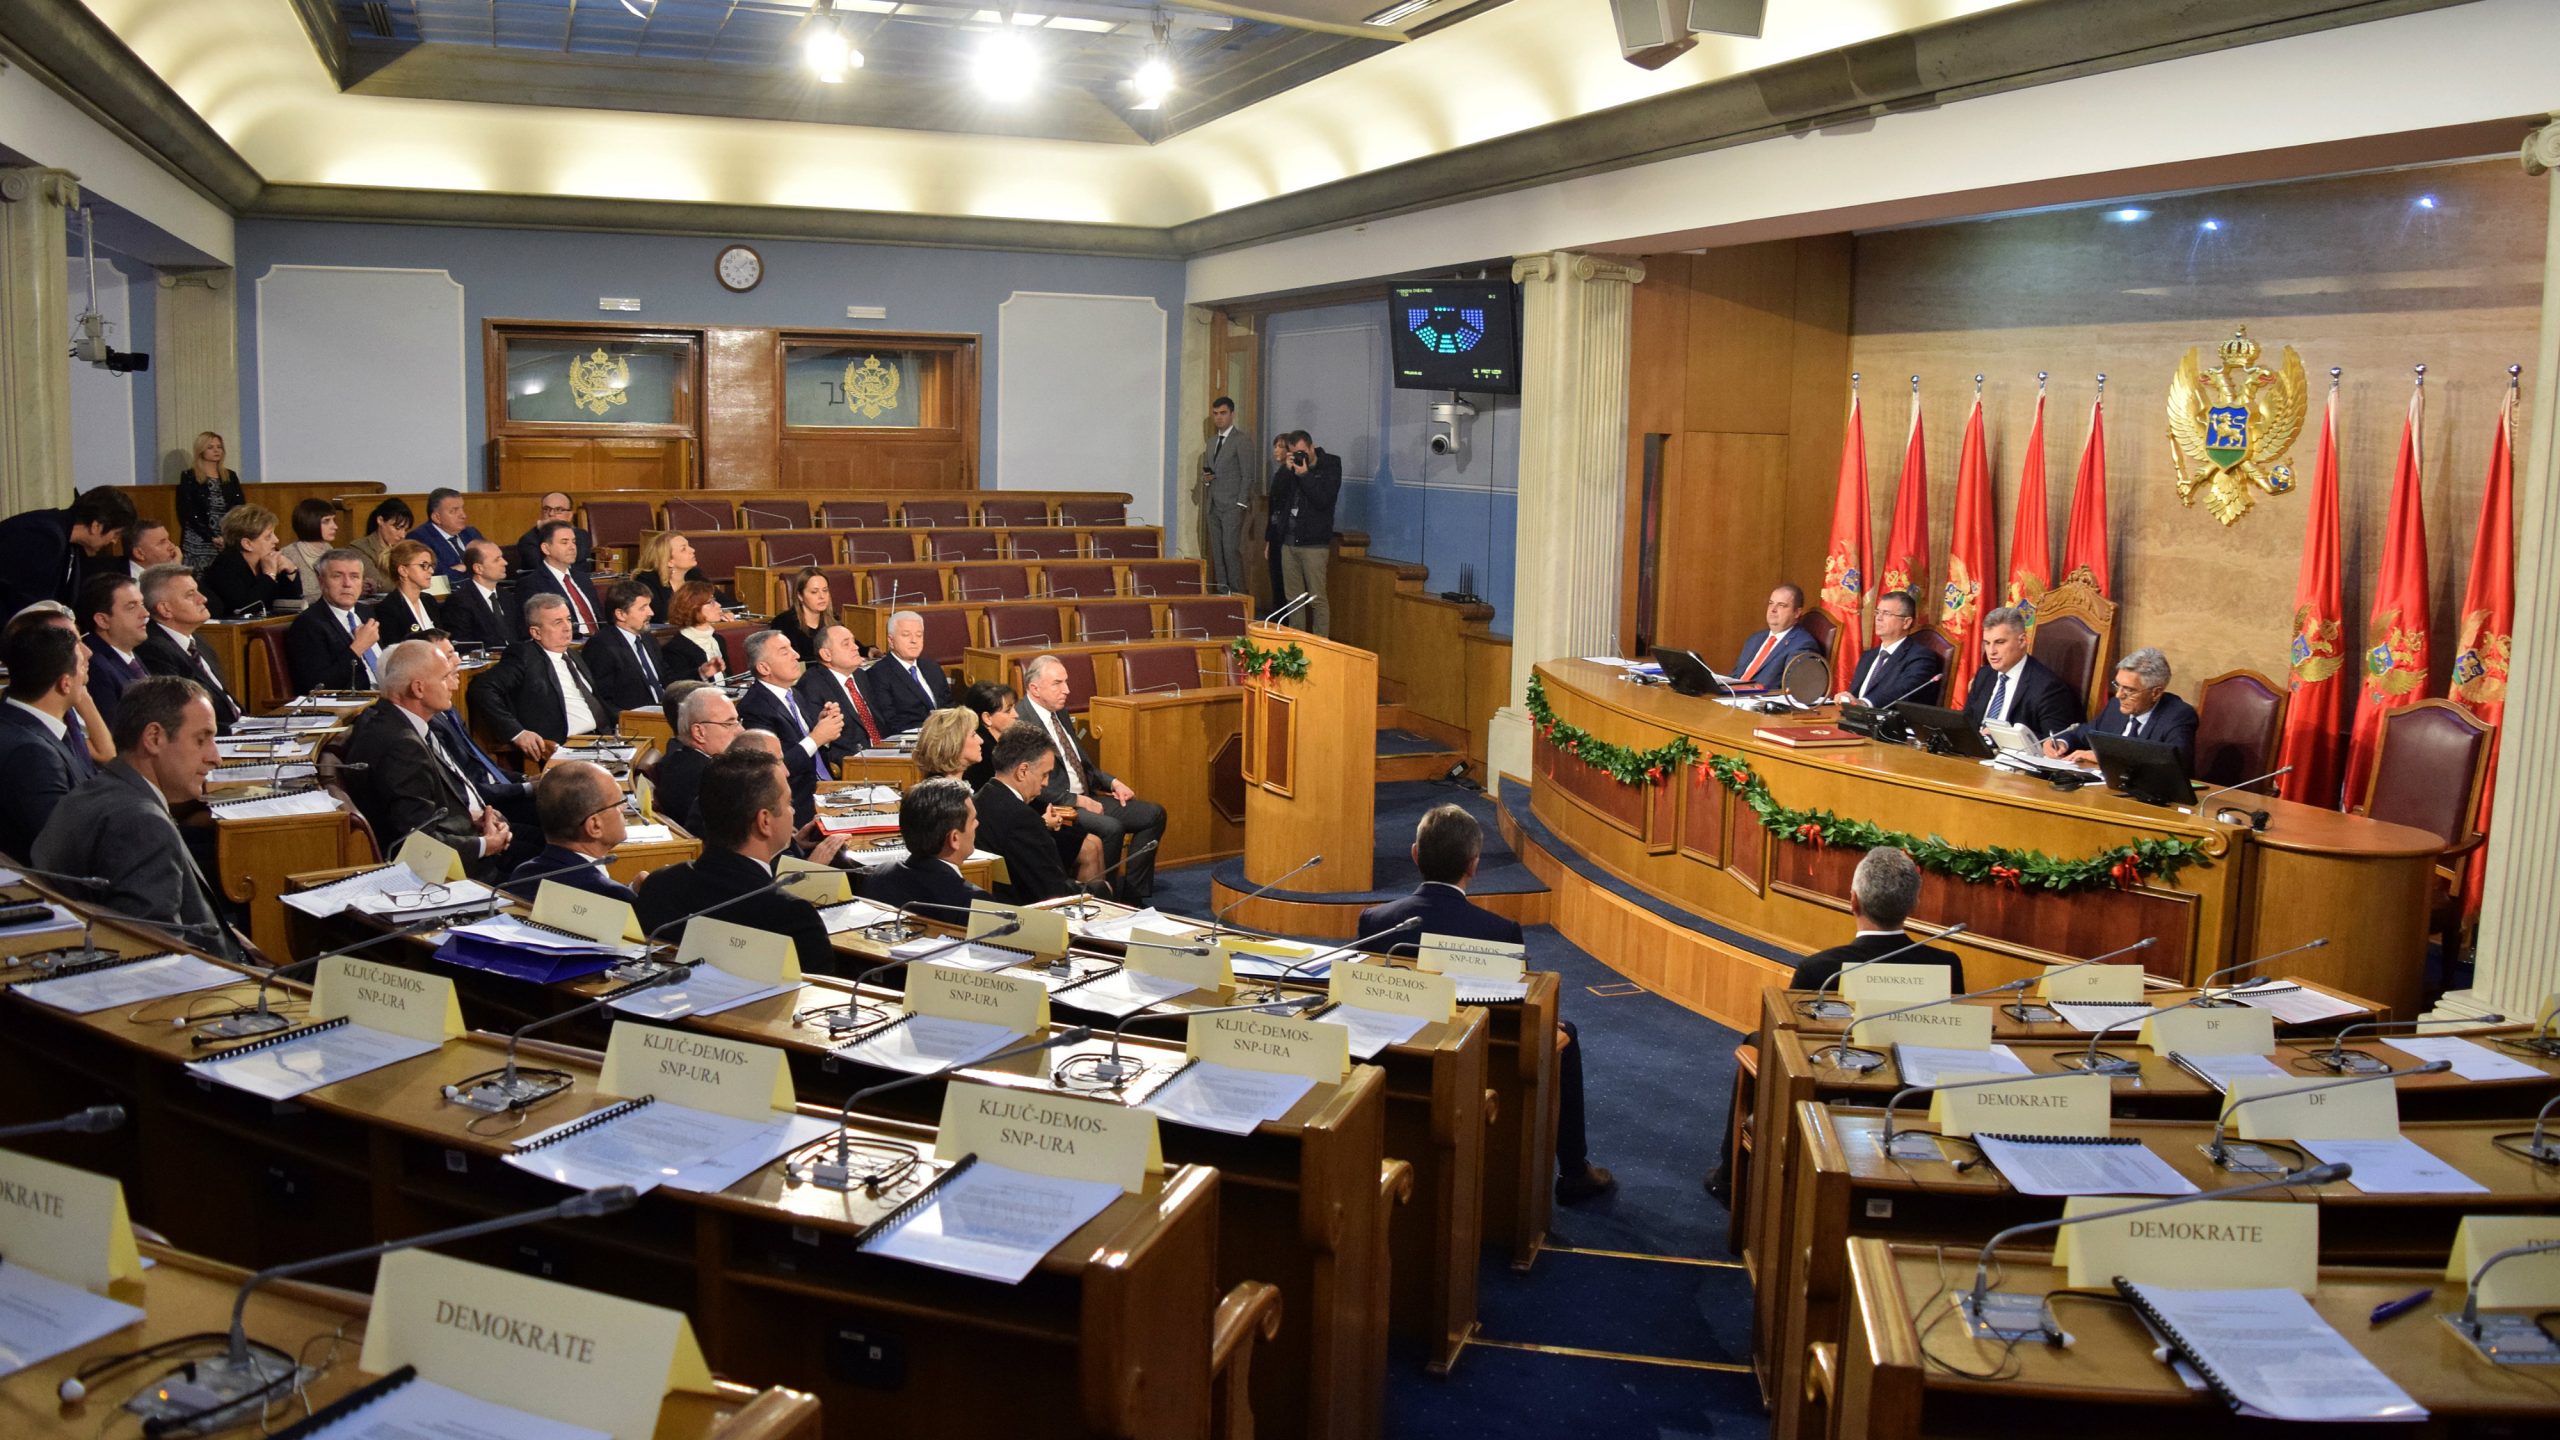 Demokratska unija Albanaca neće u novu vladu - ne žele da budu preletači 1